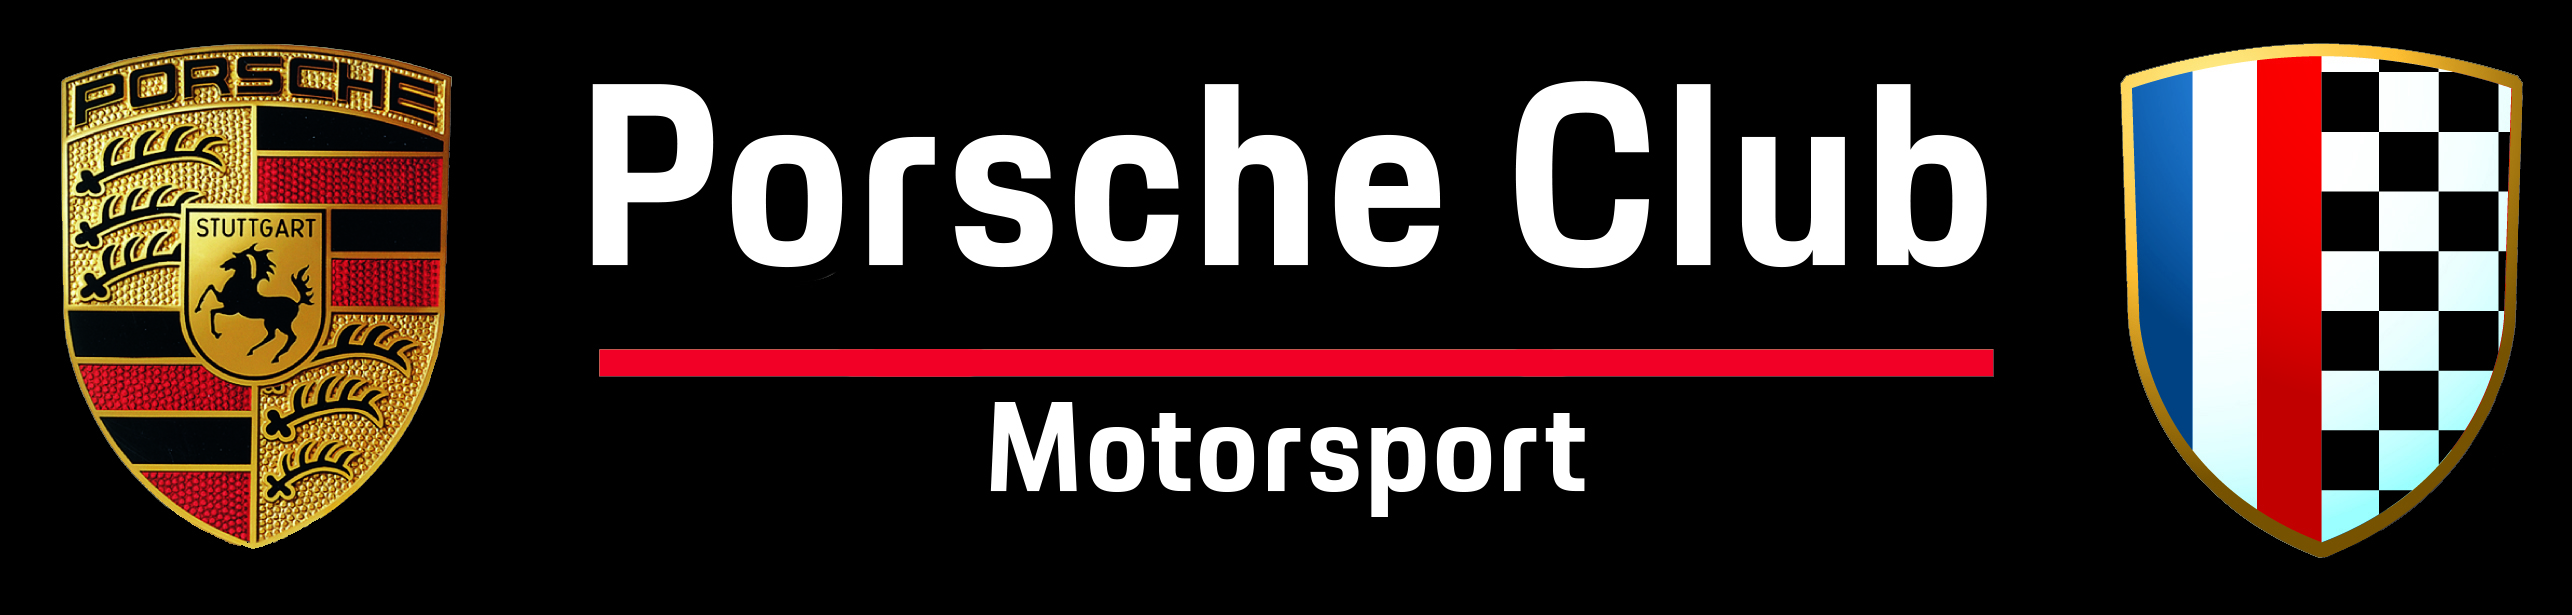 Porsche Club Motorsport France